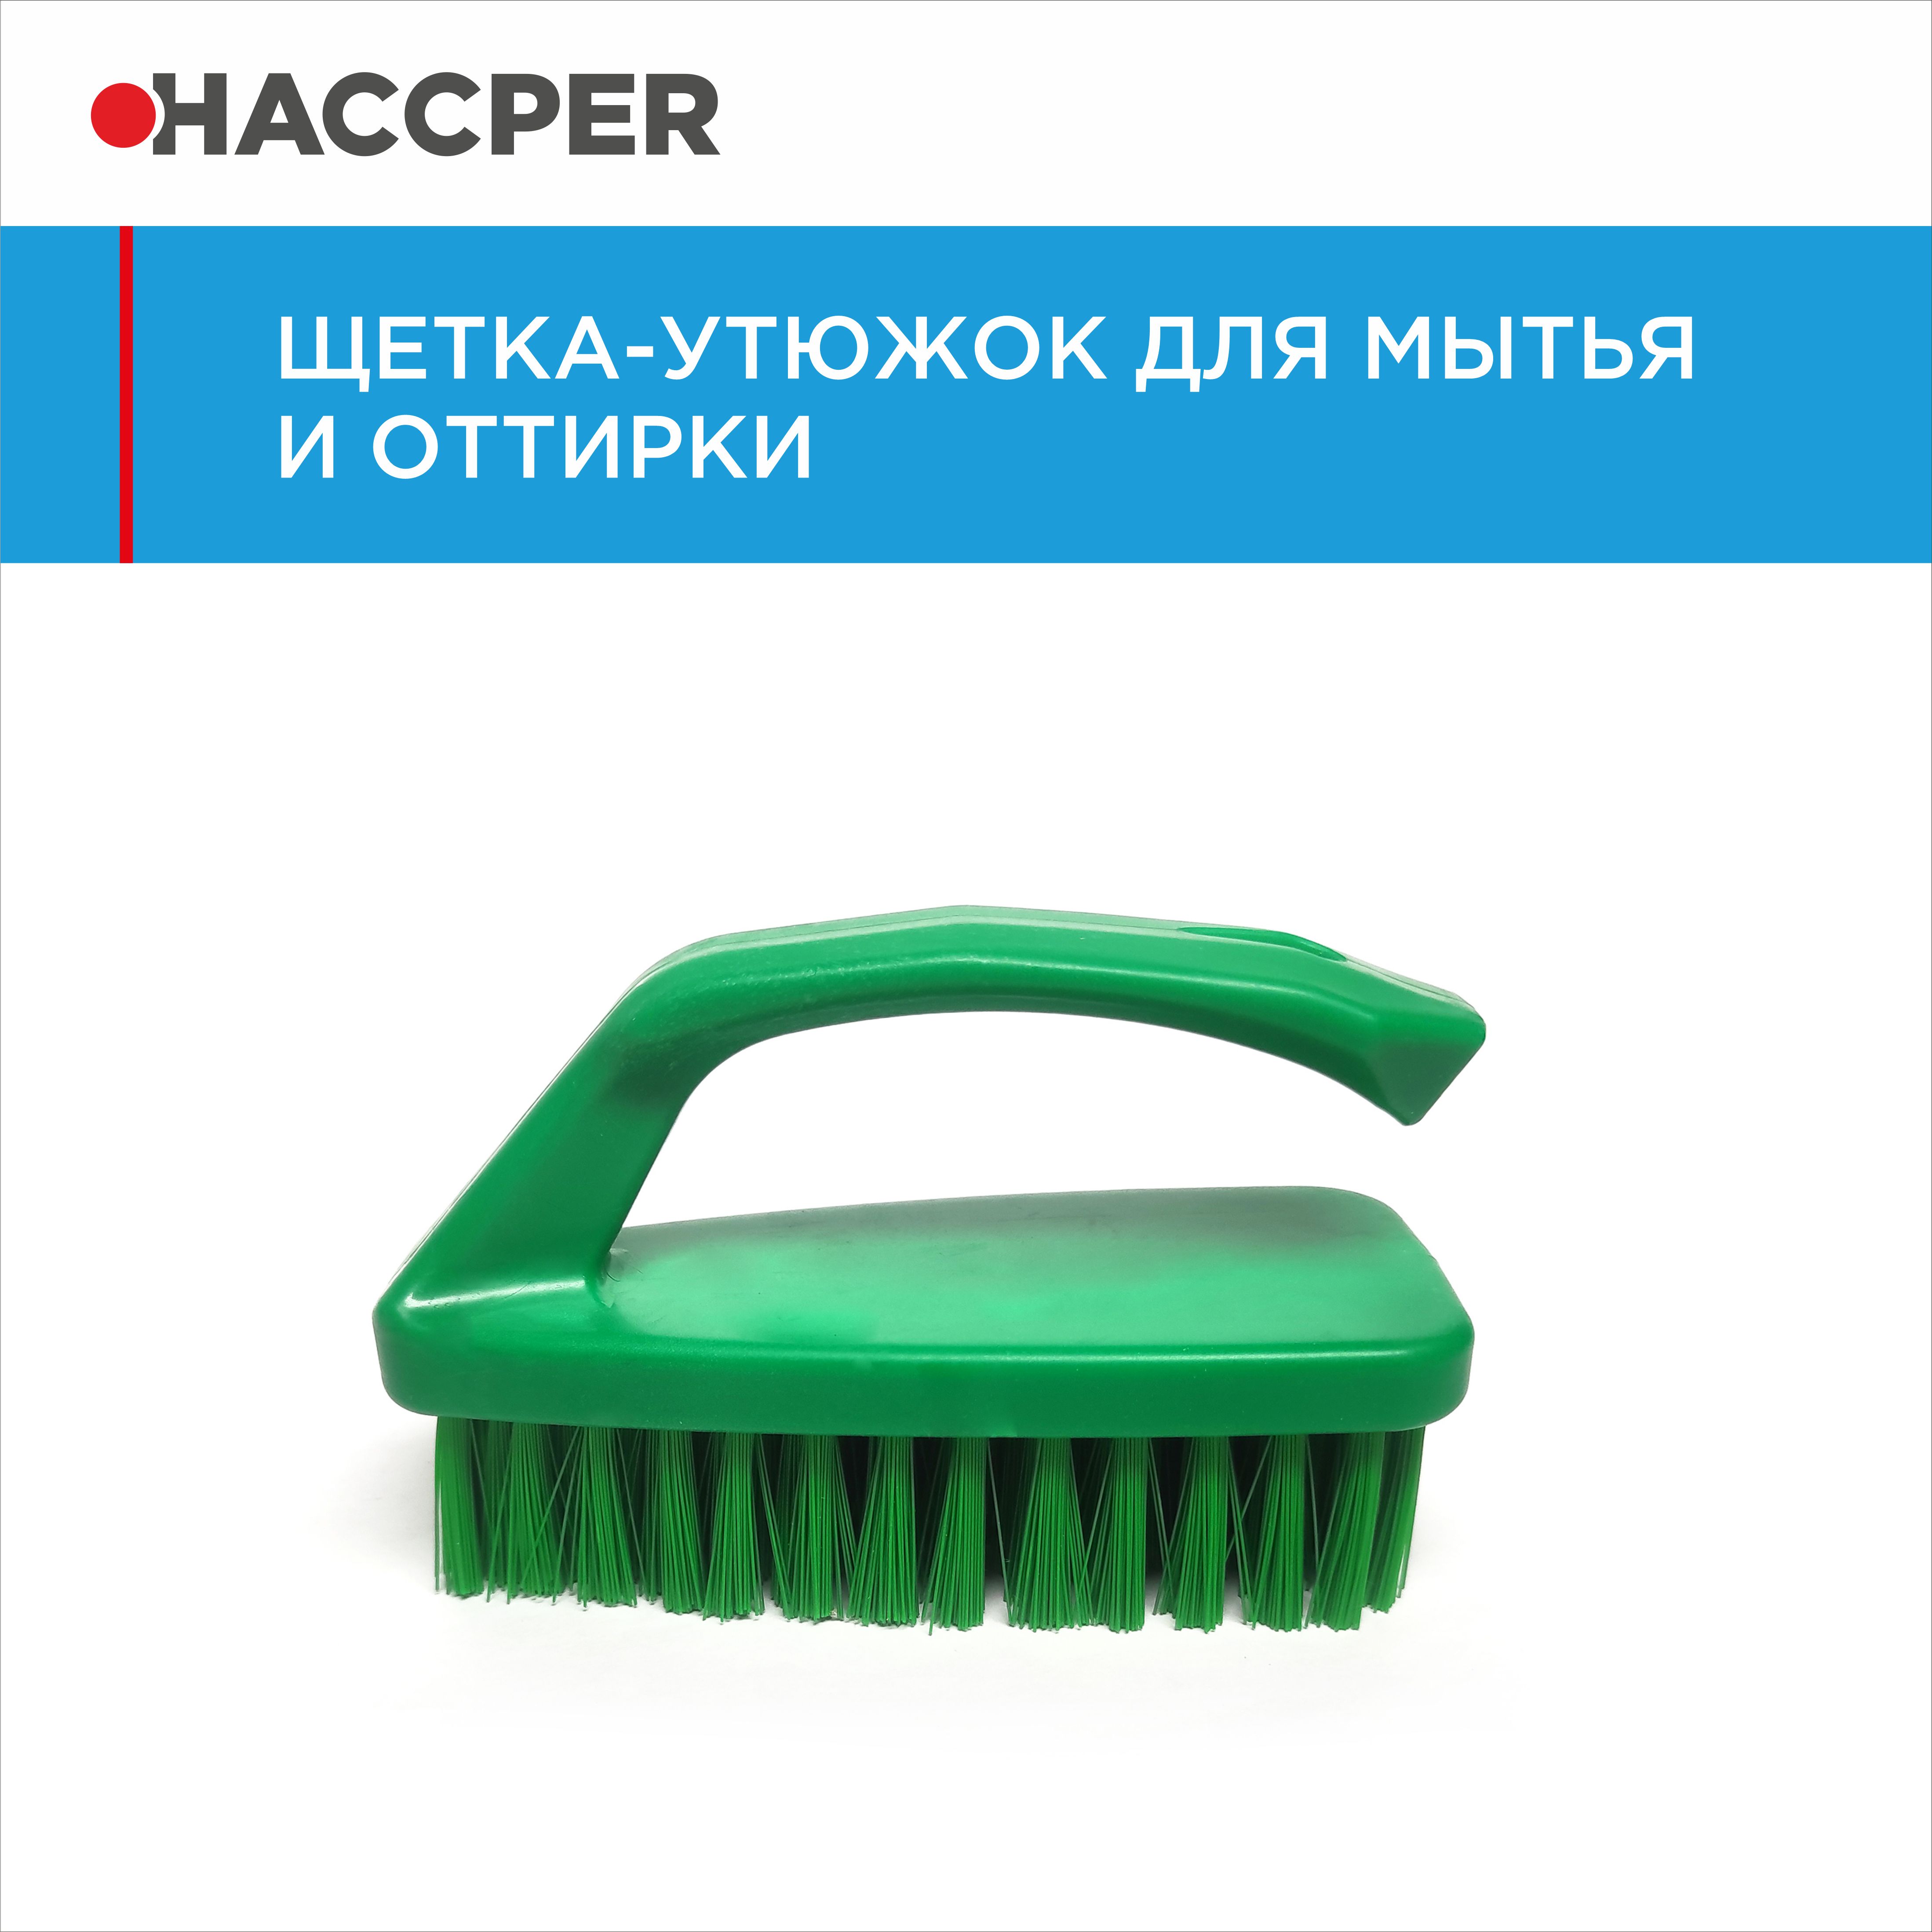 Щетка-утюжок HACCPER для мытья и оттирки, зеленая